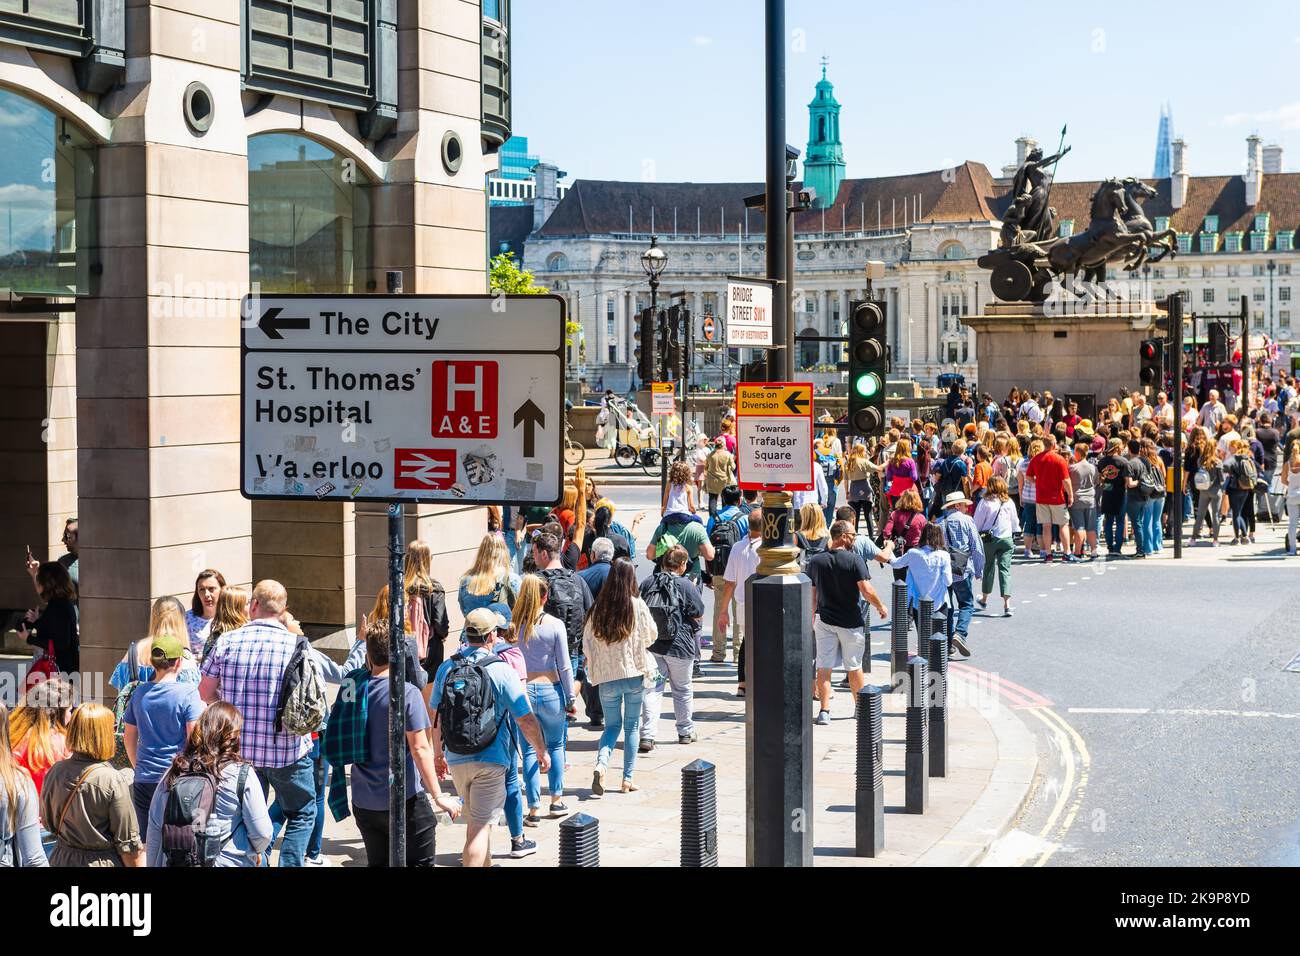 London, Vereinigtes Königreich - 22. Juni 2018: Blick aus dem Hochwinkel auf Menschen, die an der Victoria Embankment Westminster Brücke, Boudiccan Rebellion Statue, spazieren gehen Stockfoto